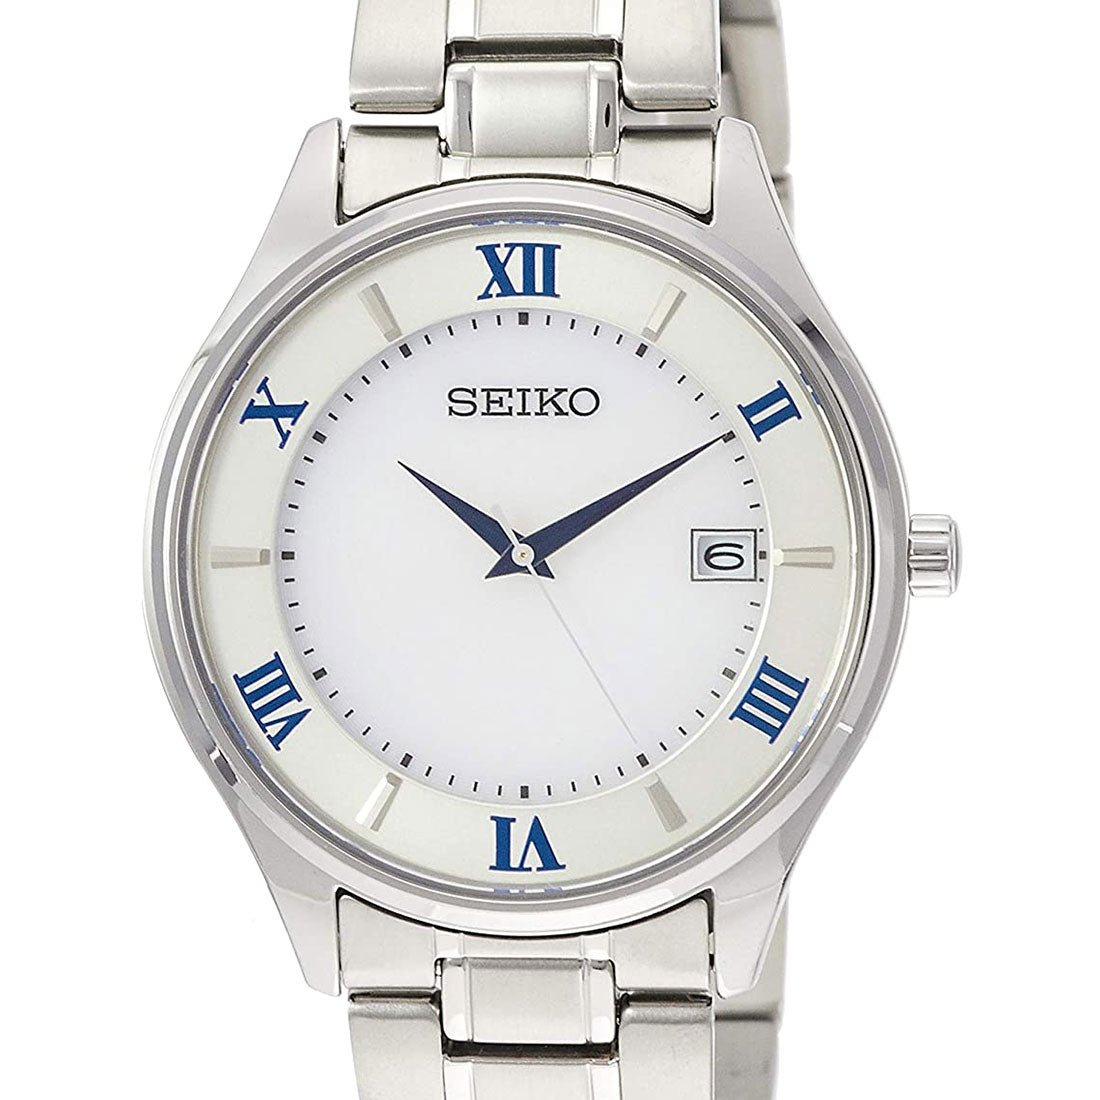 Seiko Selection Titanium JDM Watch SBPX113 -Seiko